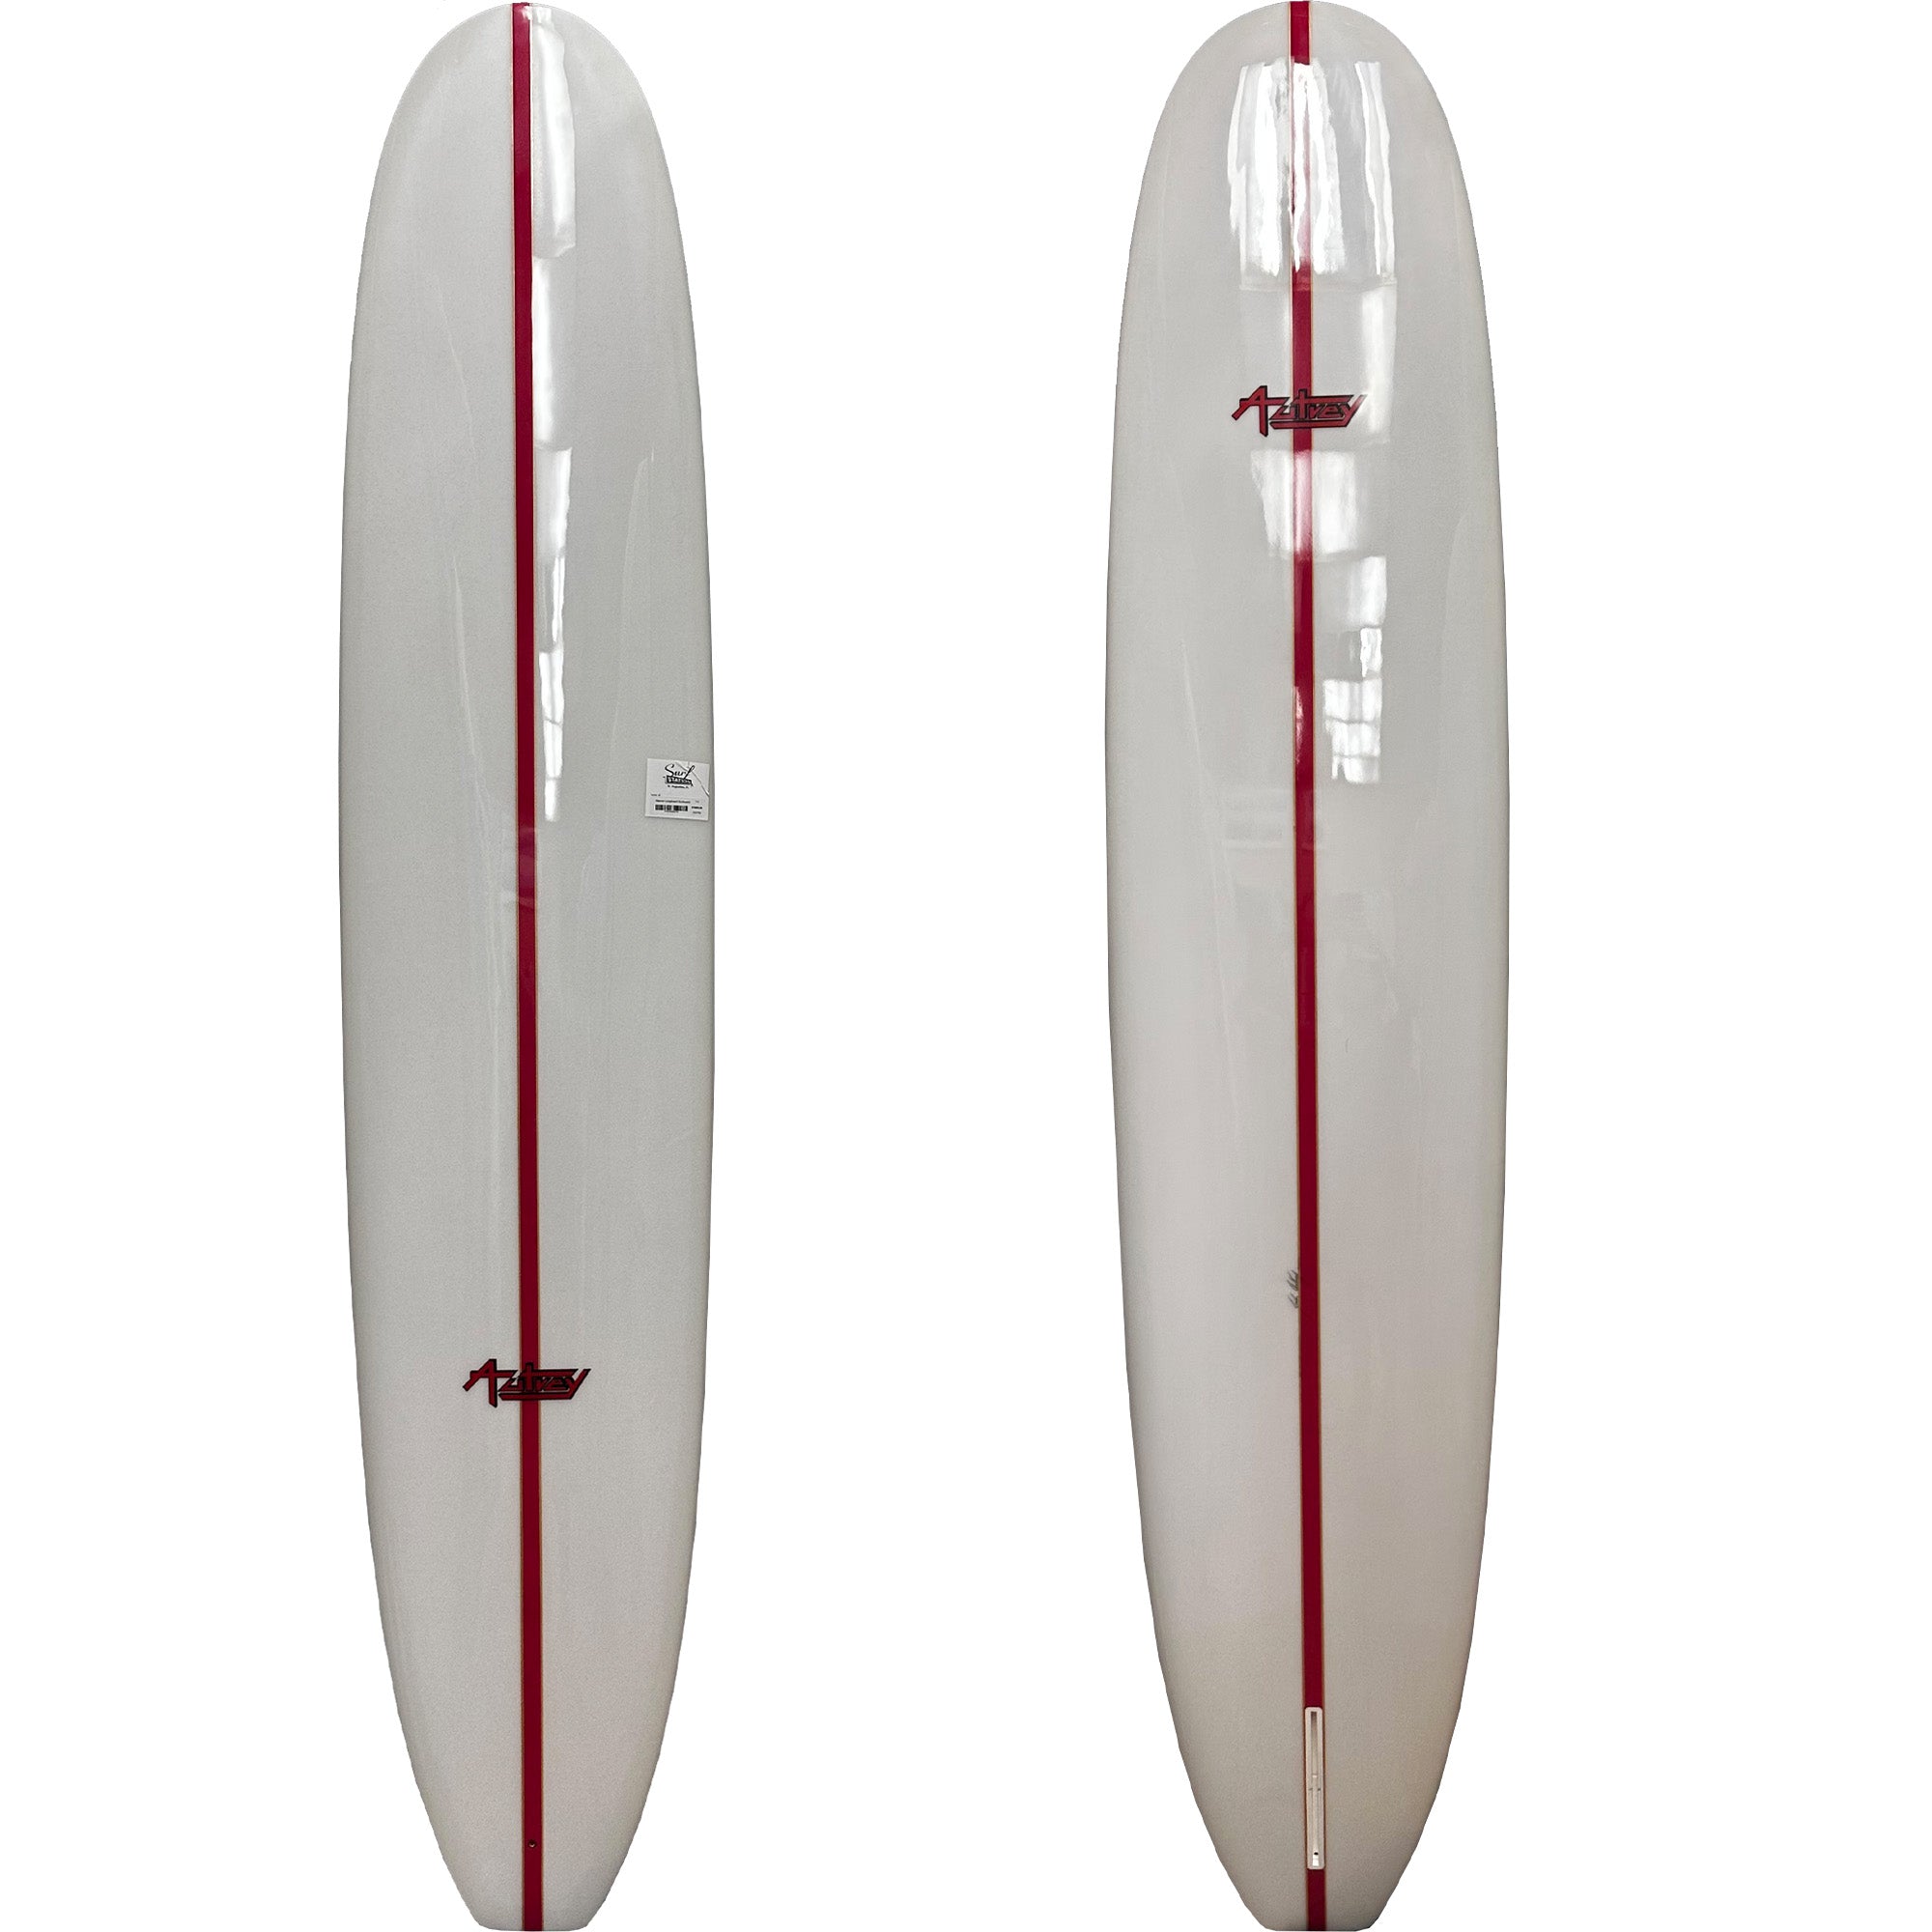 Warrior 9'6 Longboard Surfboard